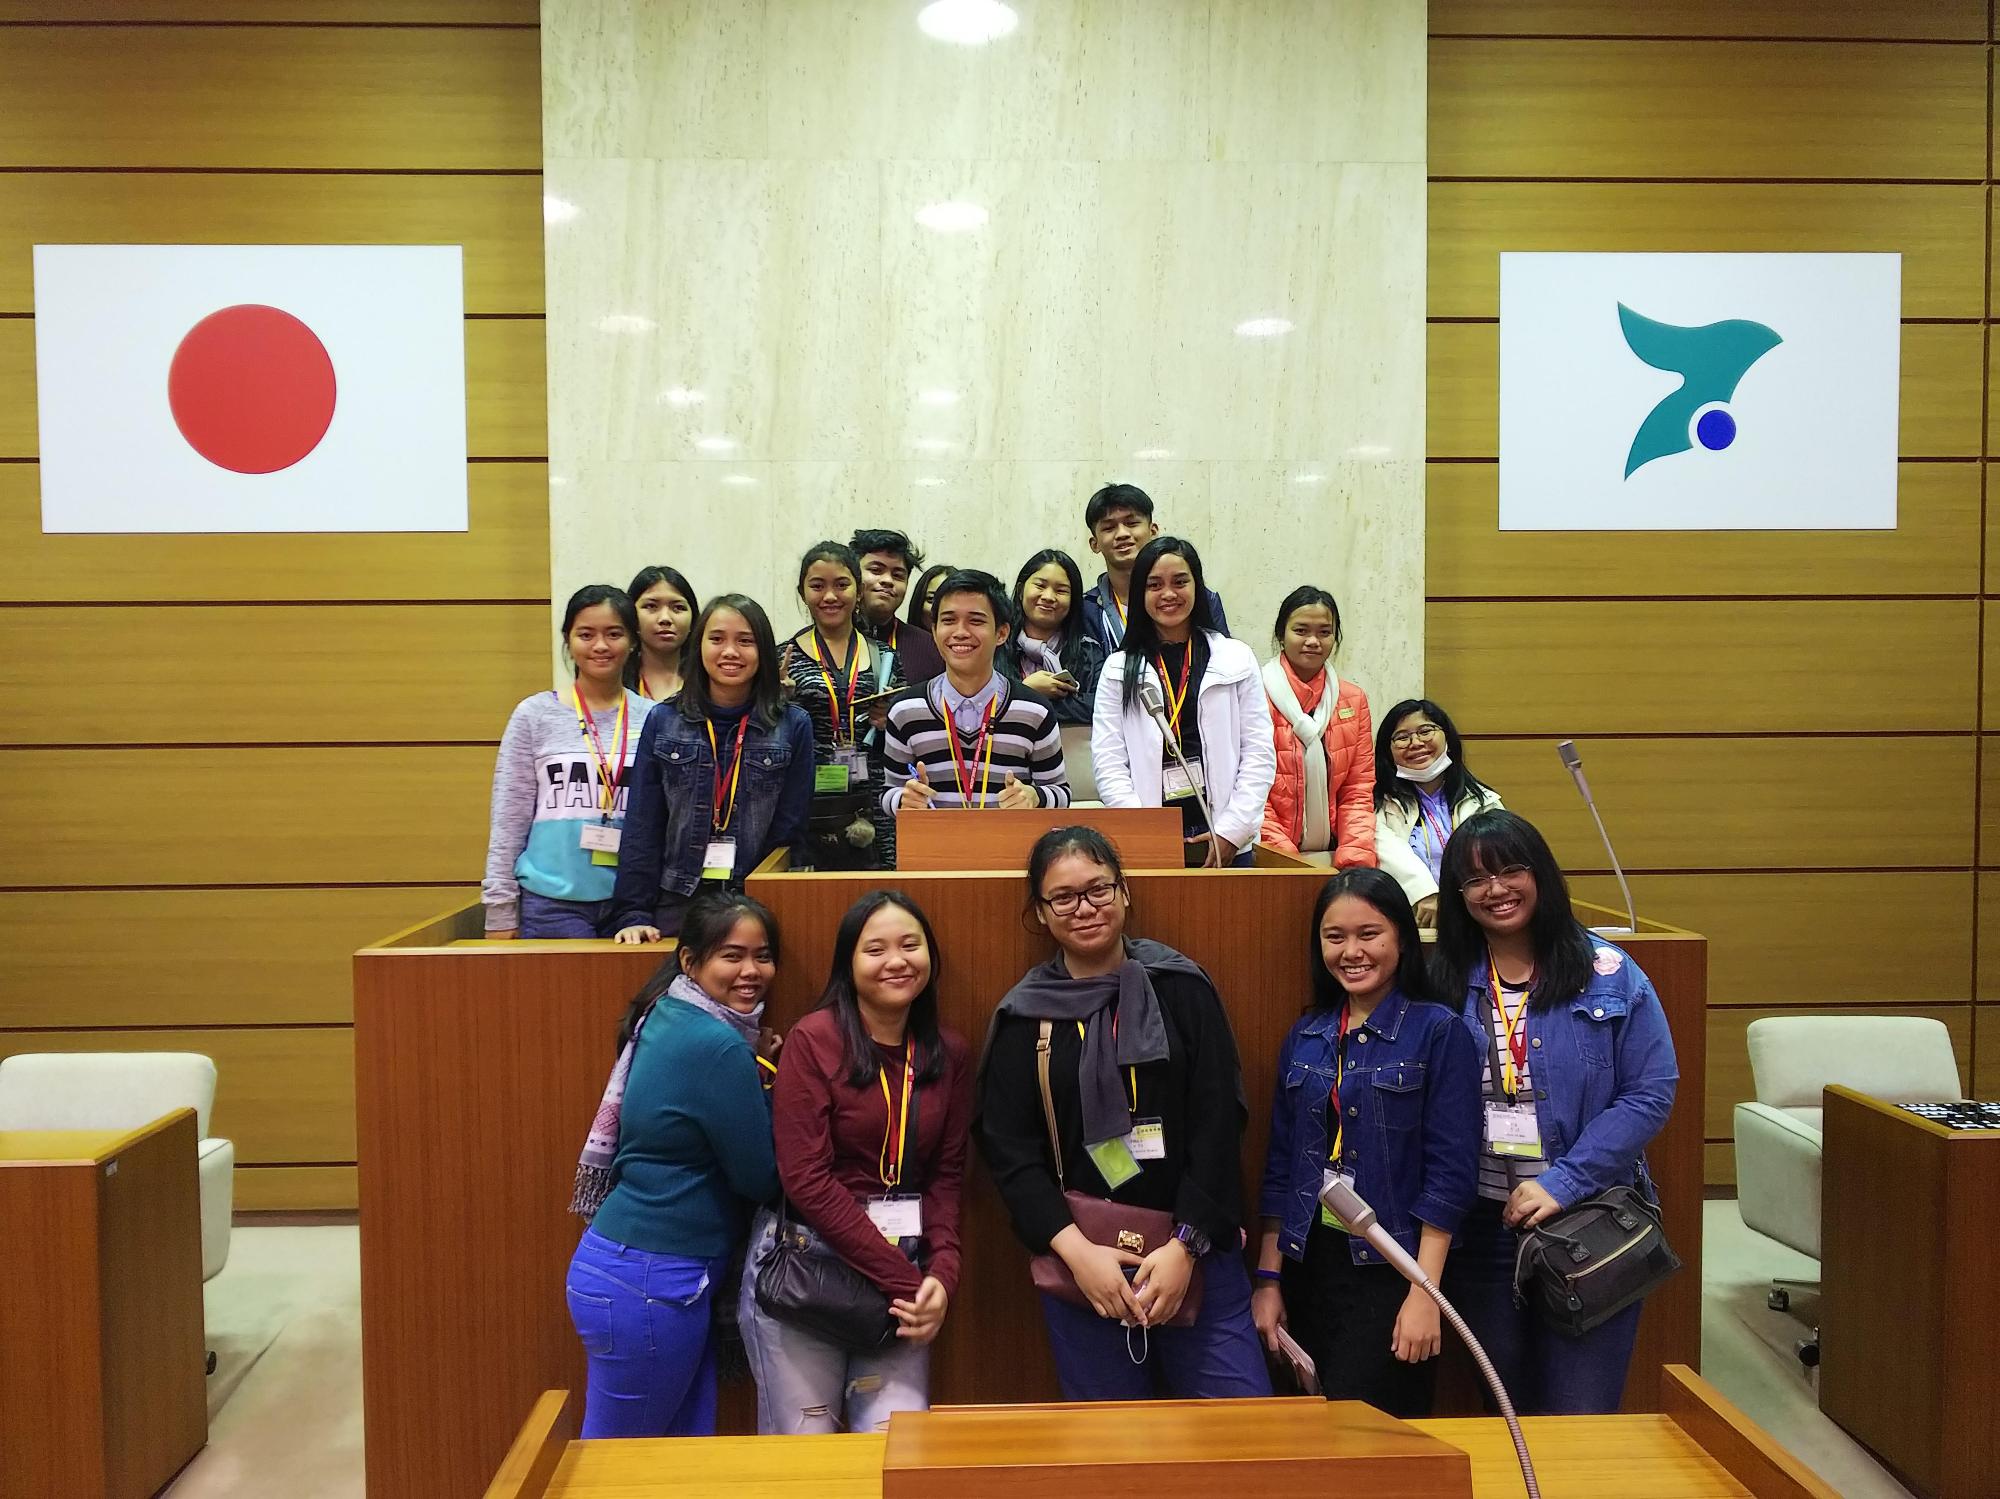 日本の国旗といすみ市のシンボルマークが掛けられた会議室の壇上で整列して笑顔で写真に映るフィリピンの中高生の皆さんの写真